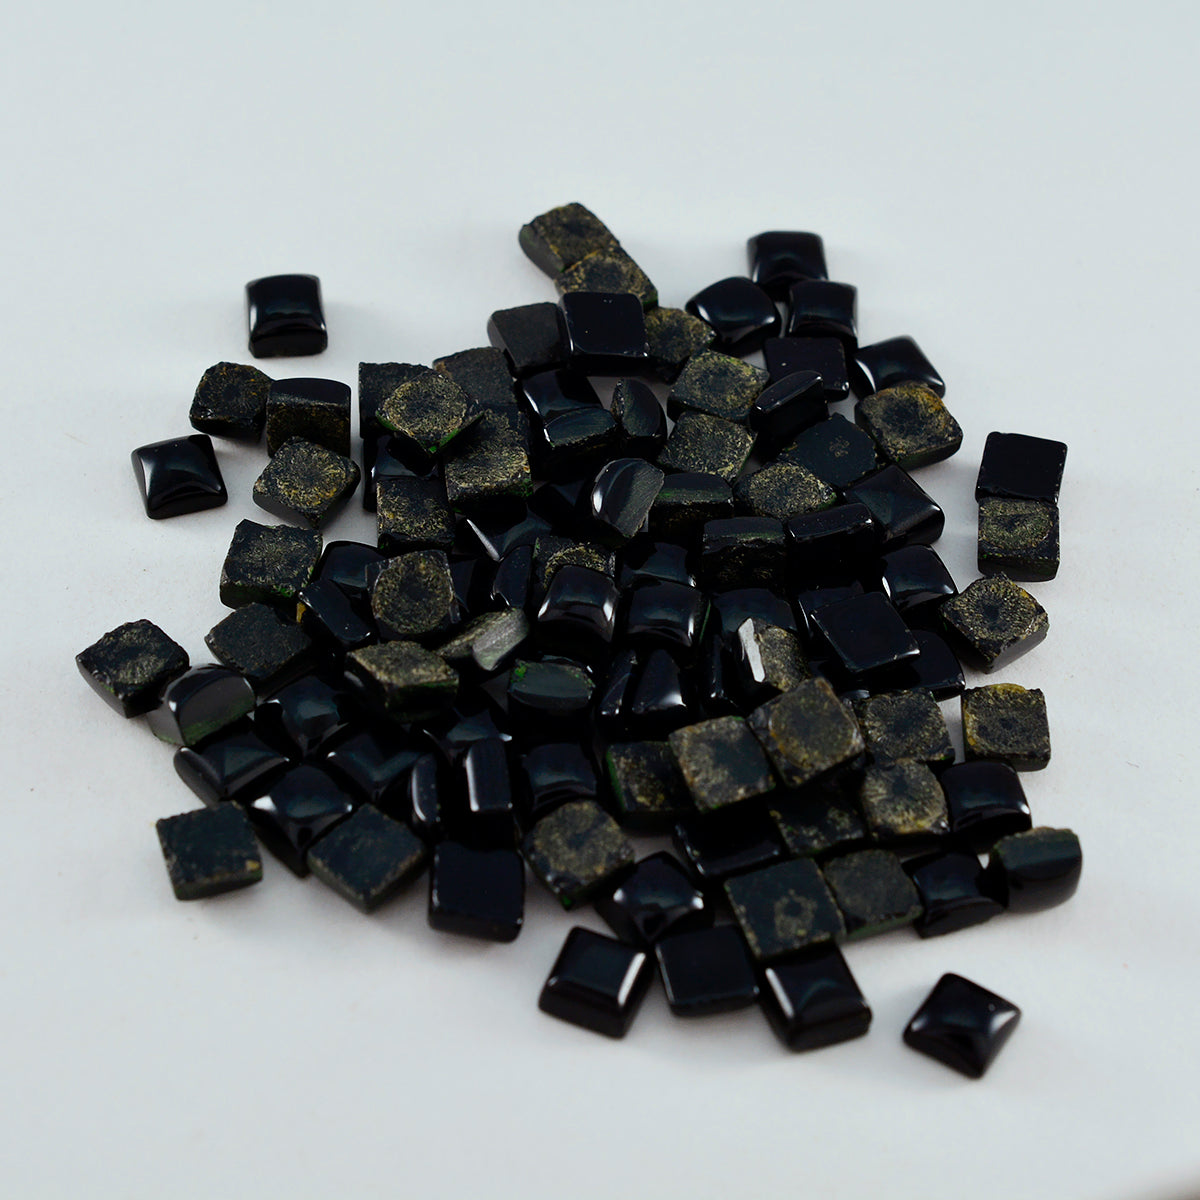 Riyogems 1PC Black Onyx Cabochon 5X5 mm vierkante vorm verbazingwekkende kwaliteitssteen